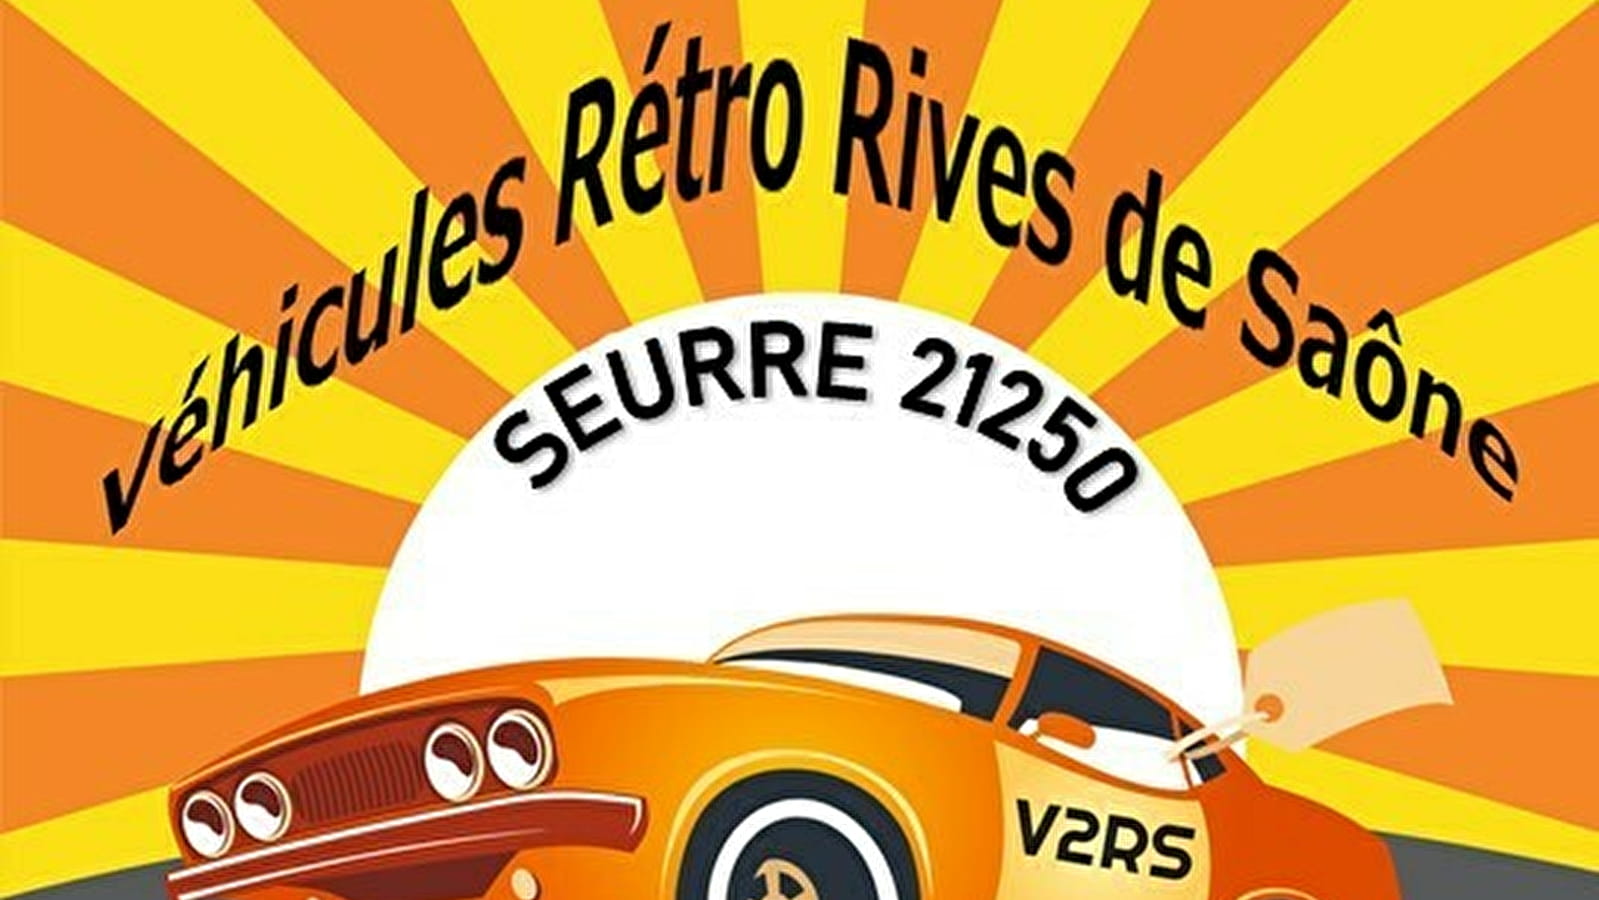 Rassemblement Véhicules Anciens - Amicale V2RS (Véhicules Rétro Rives de Saône) (Versammlung alter Fahrzeuge - Amicale V2RS (Véhicules Rétro Rives de Saône))